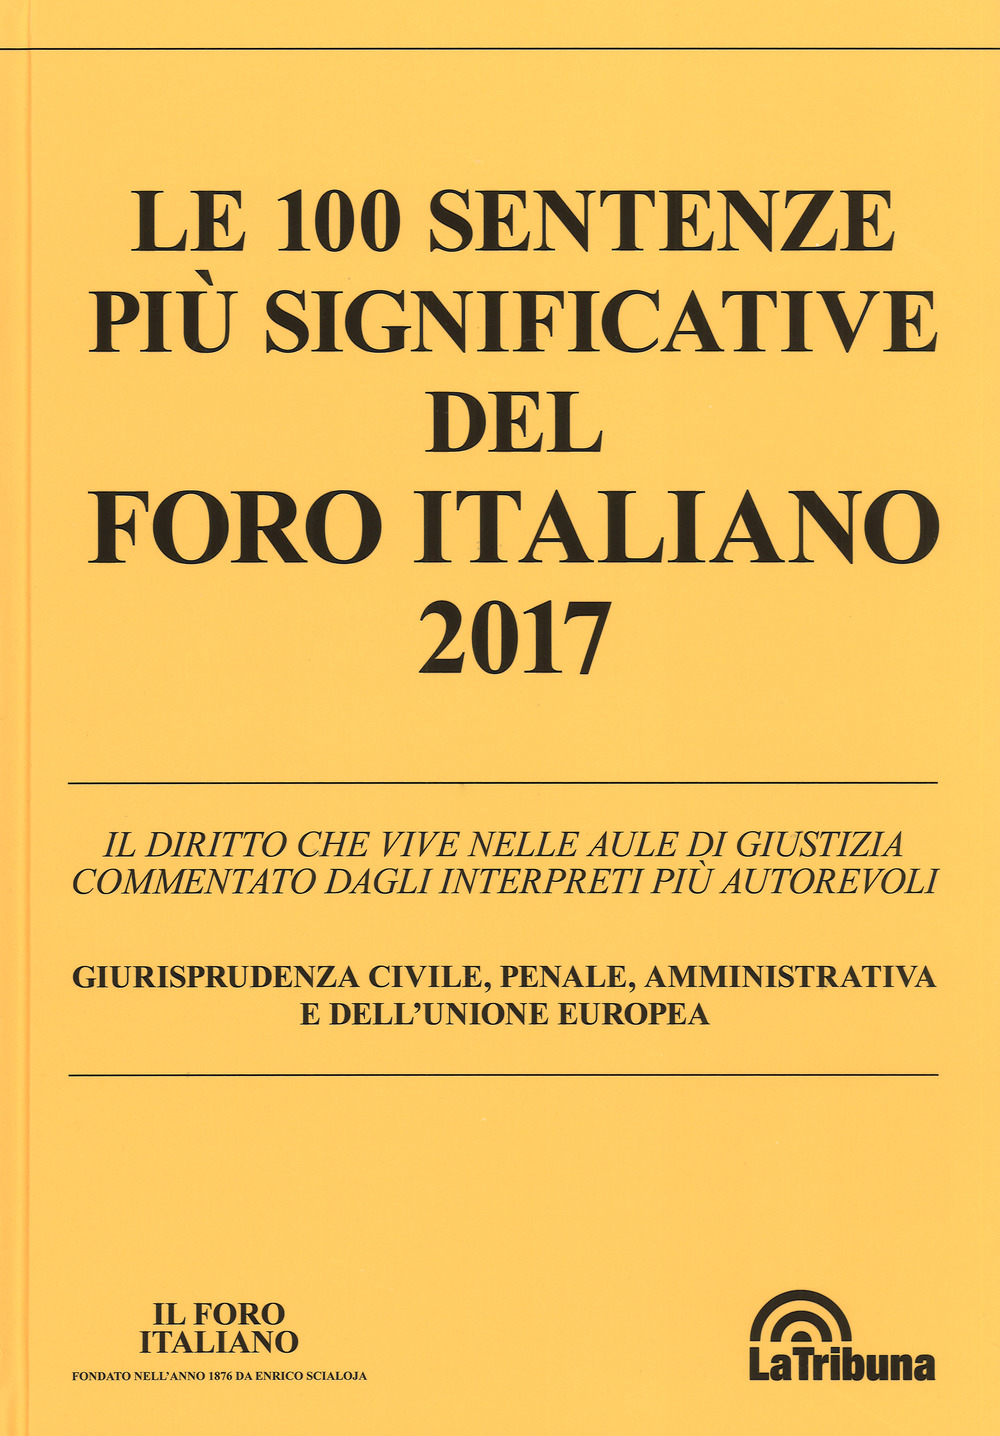 Le 100 sentenze più significative del Foro italiano 2017